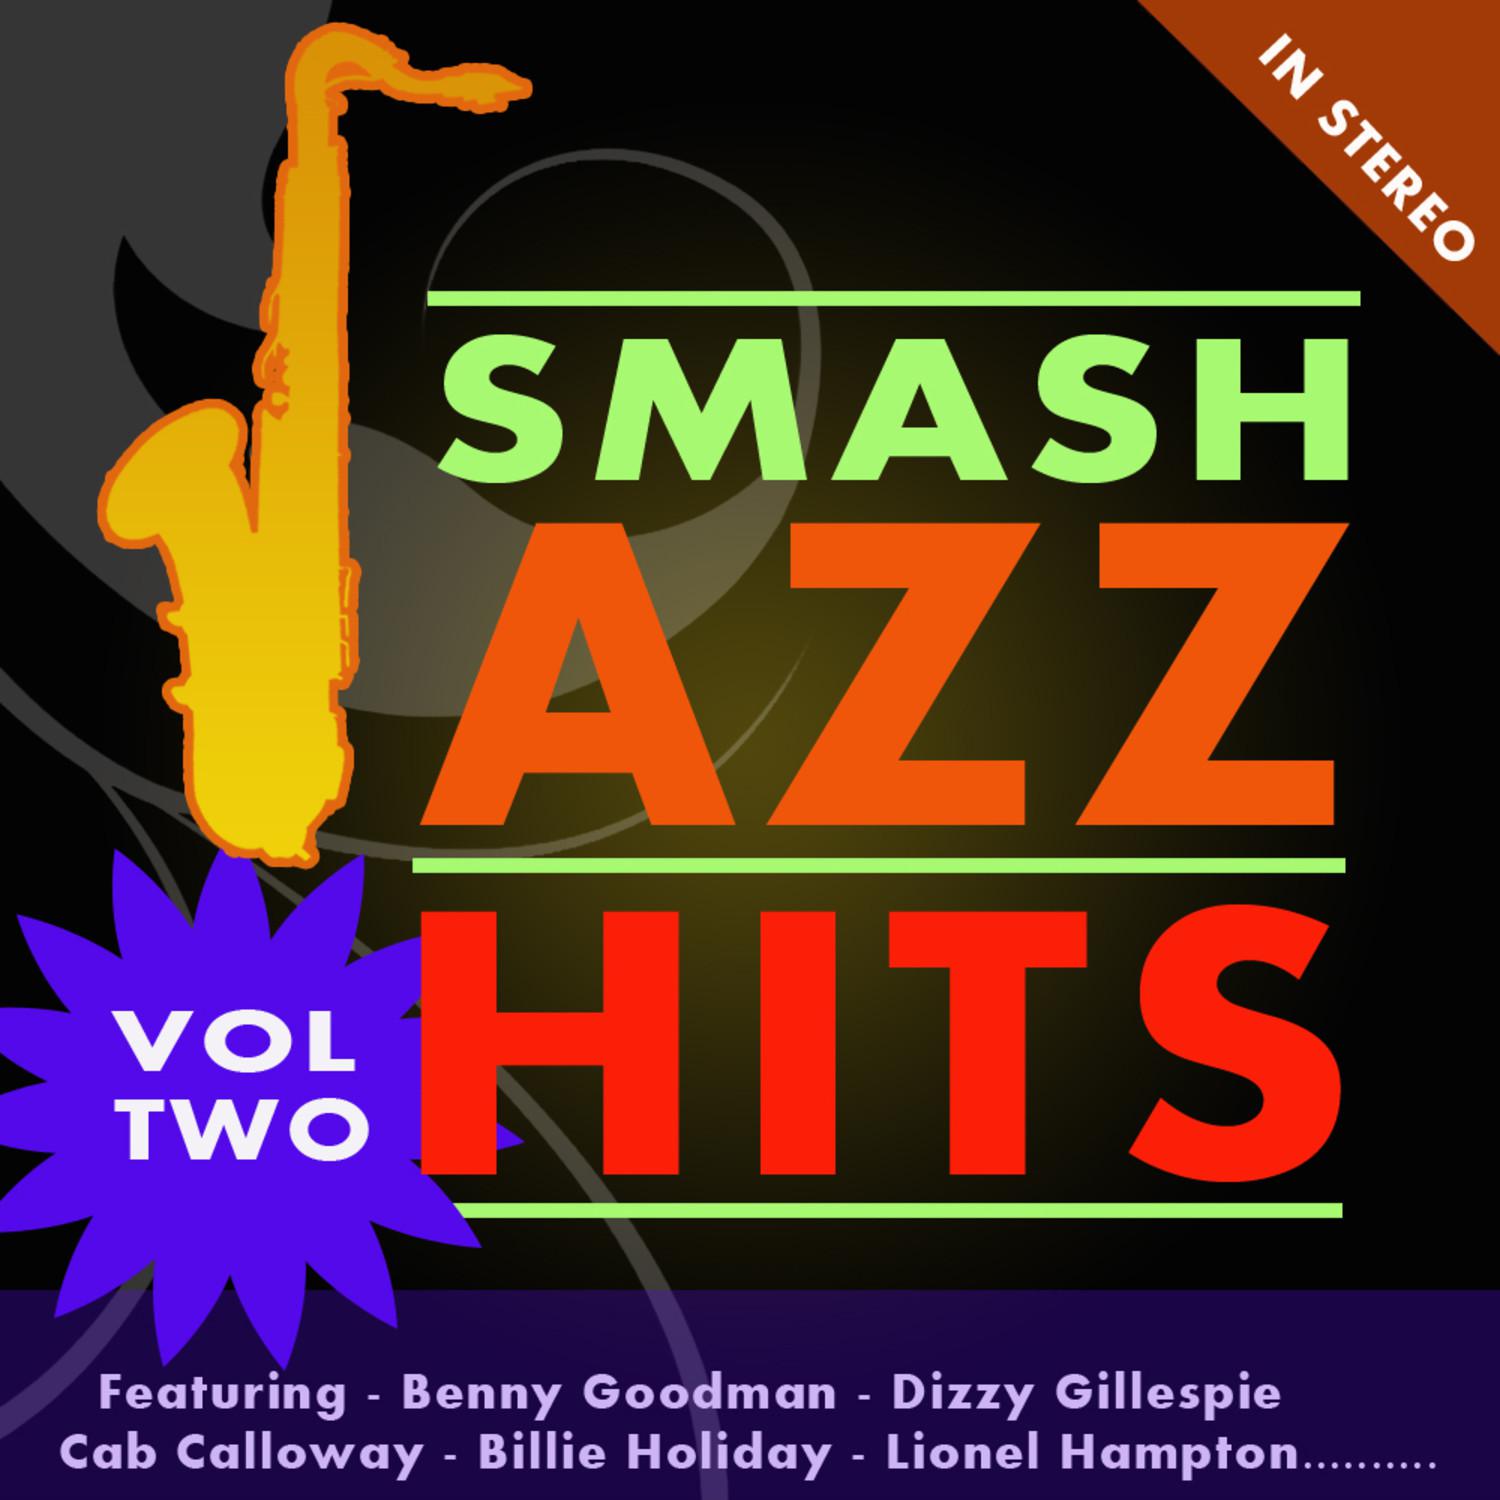 Smash Jazz Hits Vol 2